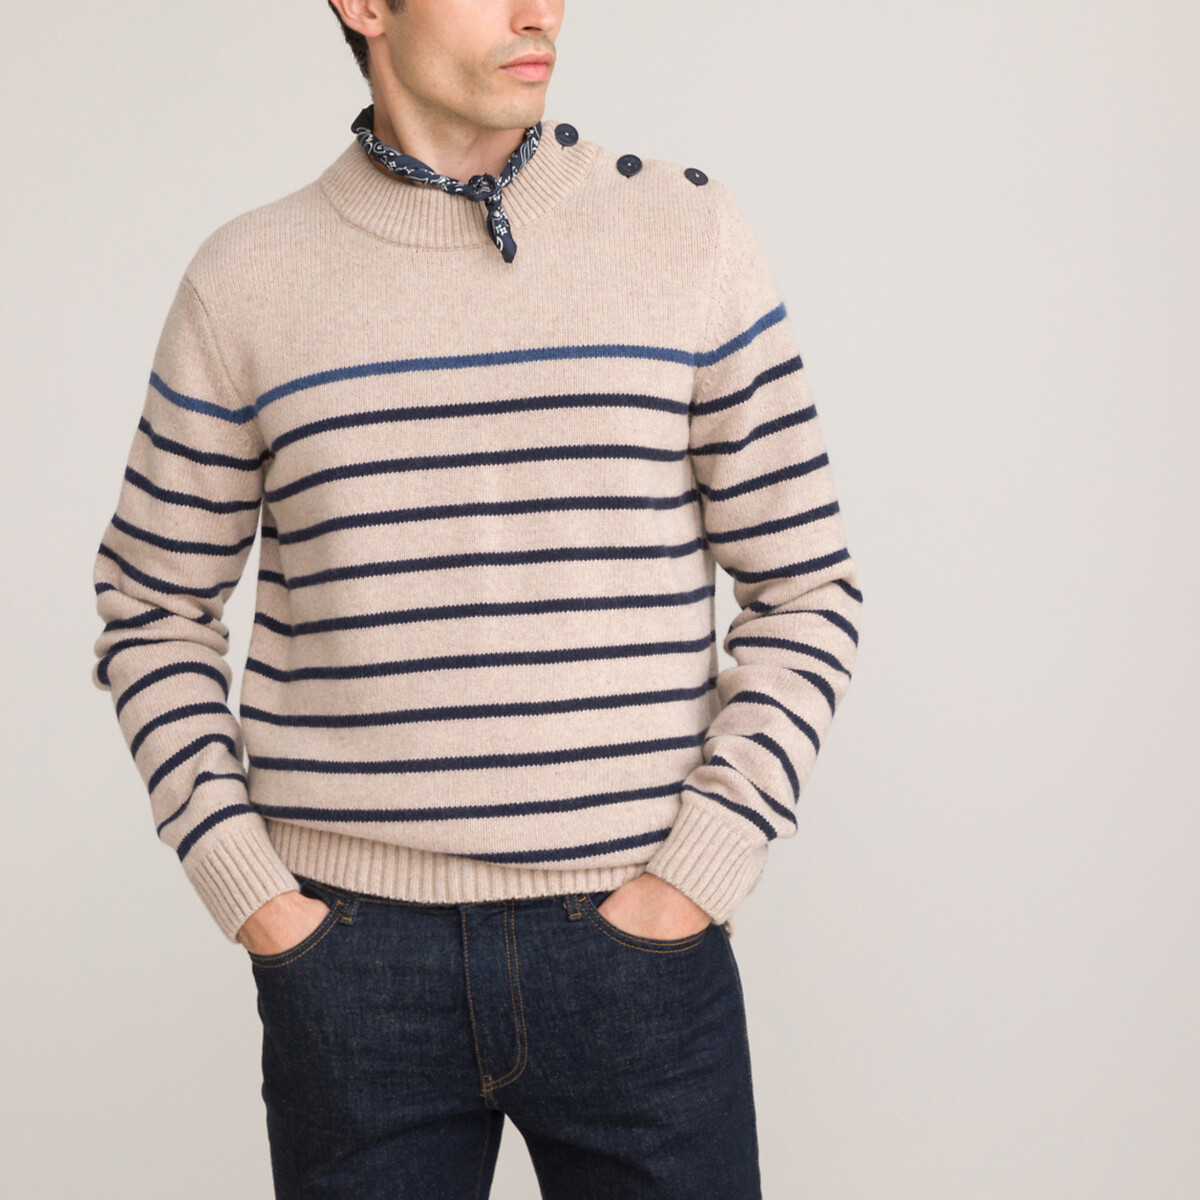 Пуловер в стиле тельняшки с круглым вырезом из тонкого трикотажа M бежевый 